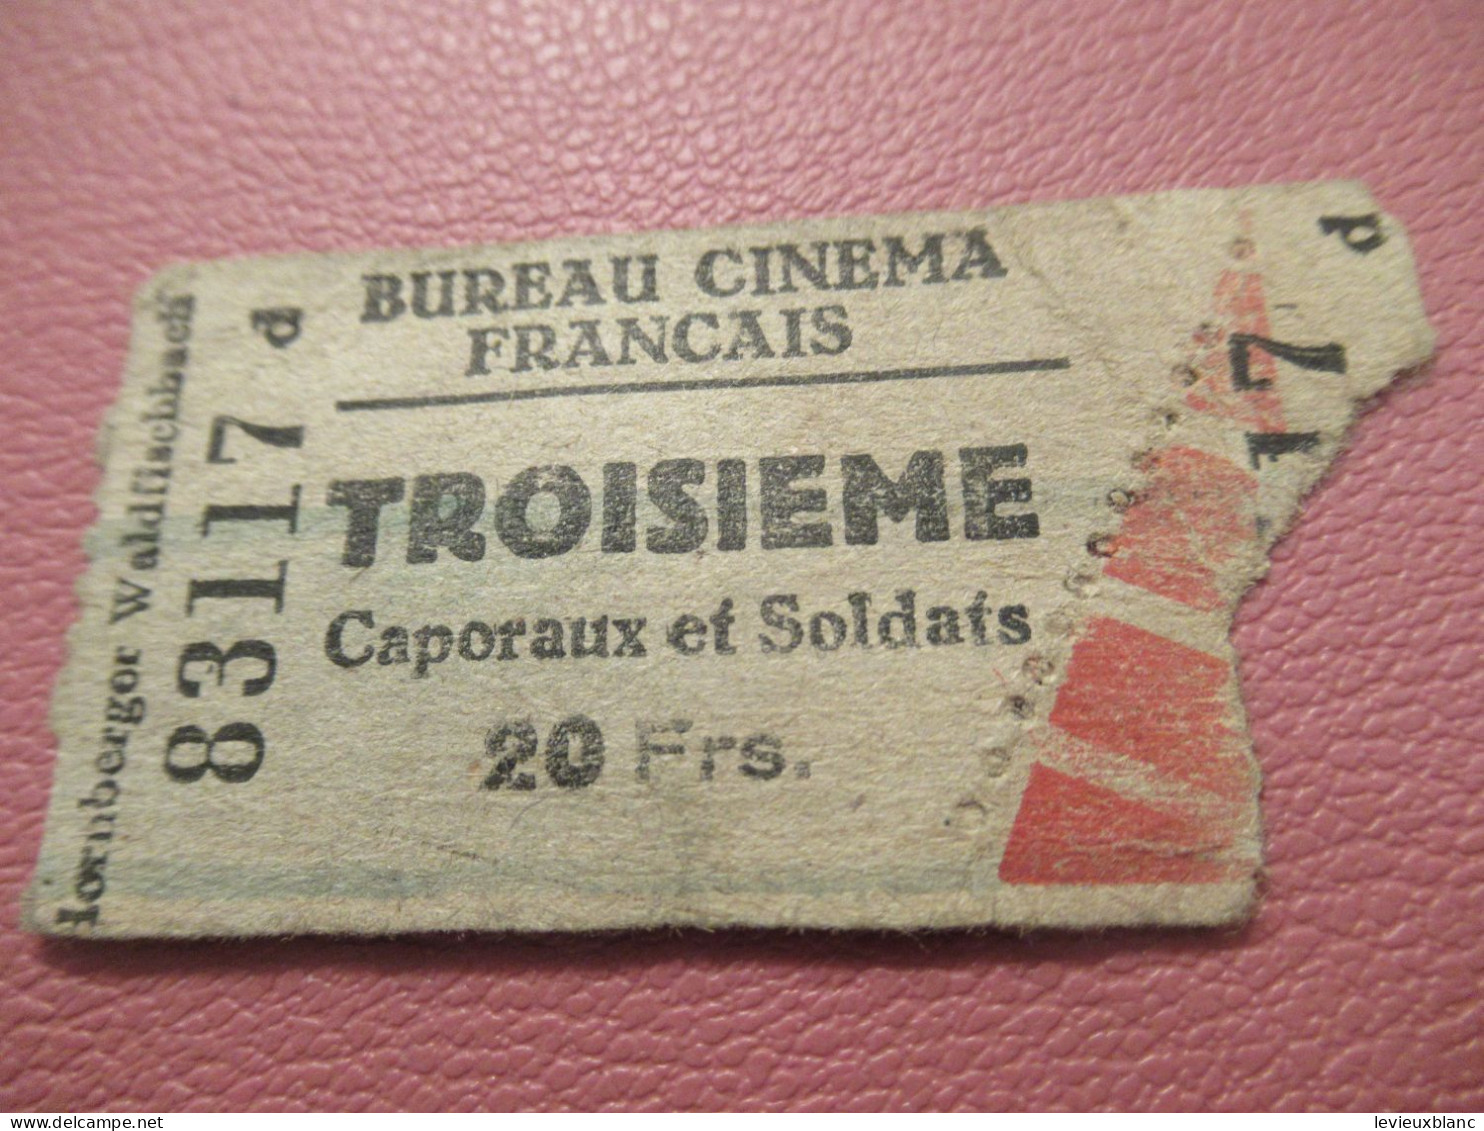 France / BUREAU CINEMA FRANCAIS/Troisième/ Caporaux Et Soldats /Lornberger Waldfischbach /1939-1945     TCK277 - Tickets - Entradas